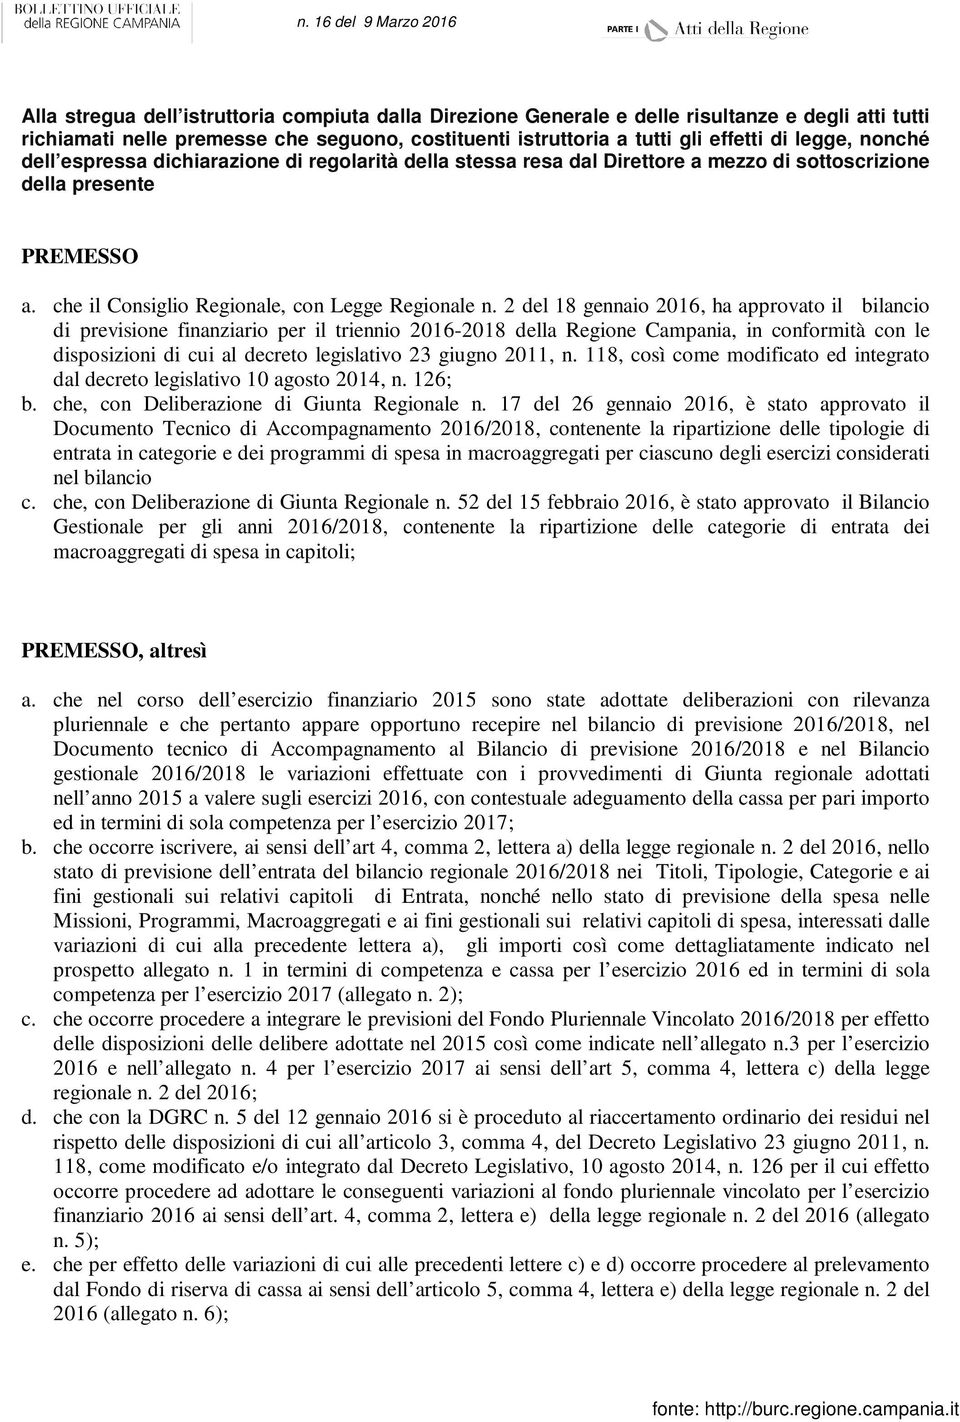 2 del 18 gennaio 2016, ha approvato il bilancio di previsione finanziario per il triennio 2016-2018 della Regione Campania, in conformità con le disposizioni di cui al decreto legislativo 23 giugno